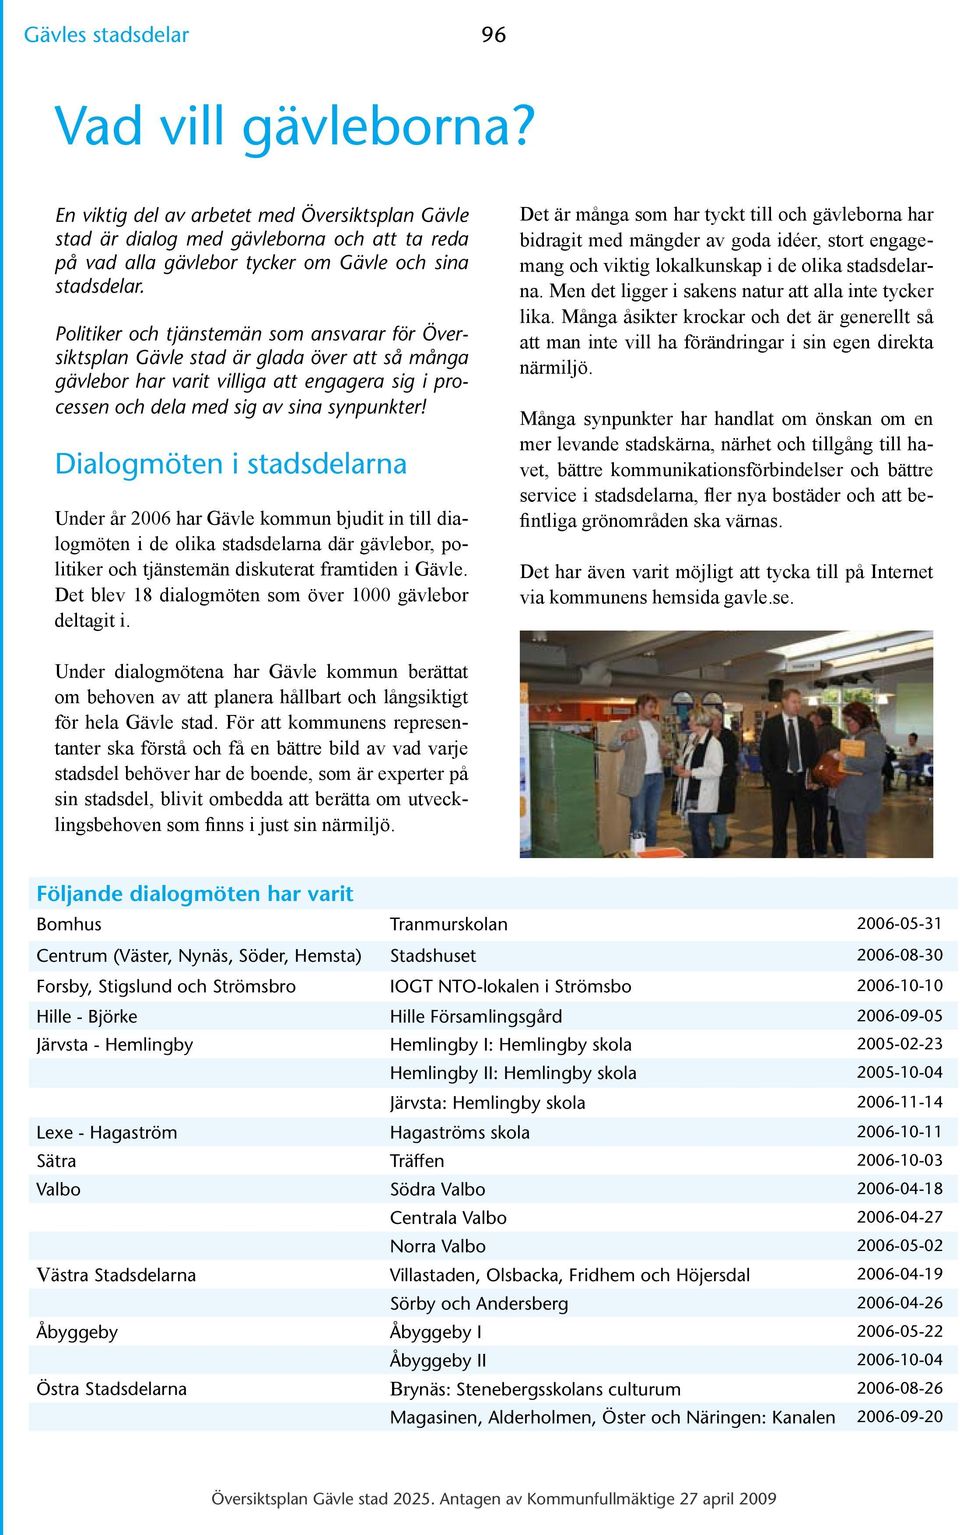 Dialogmöten i stadsdelarna Under år 2006 har Gävle kommun bjudit in till dialogmöten i de olika stadsdelarna där gävlebor, politiker och tjänstemän diskuterat framtiden i Gävle.